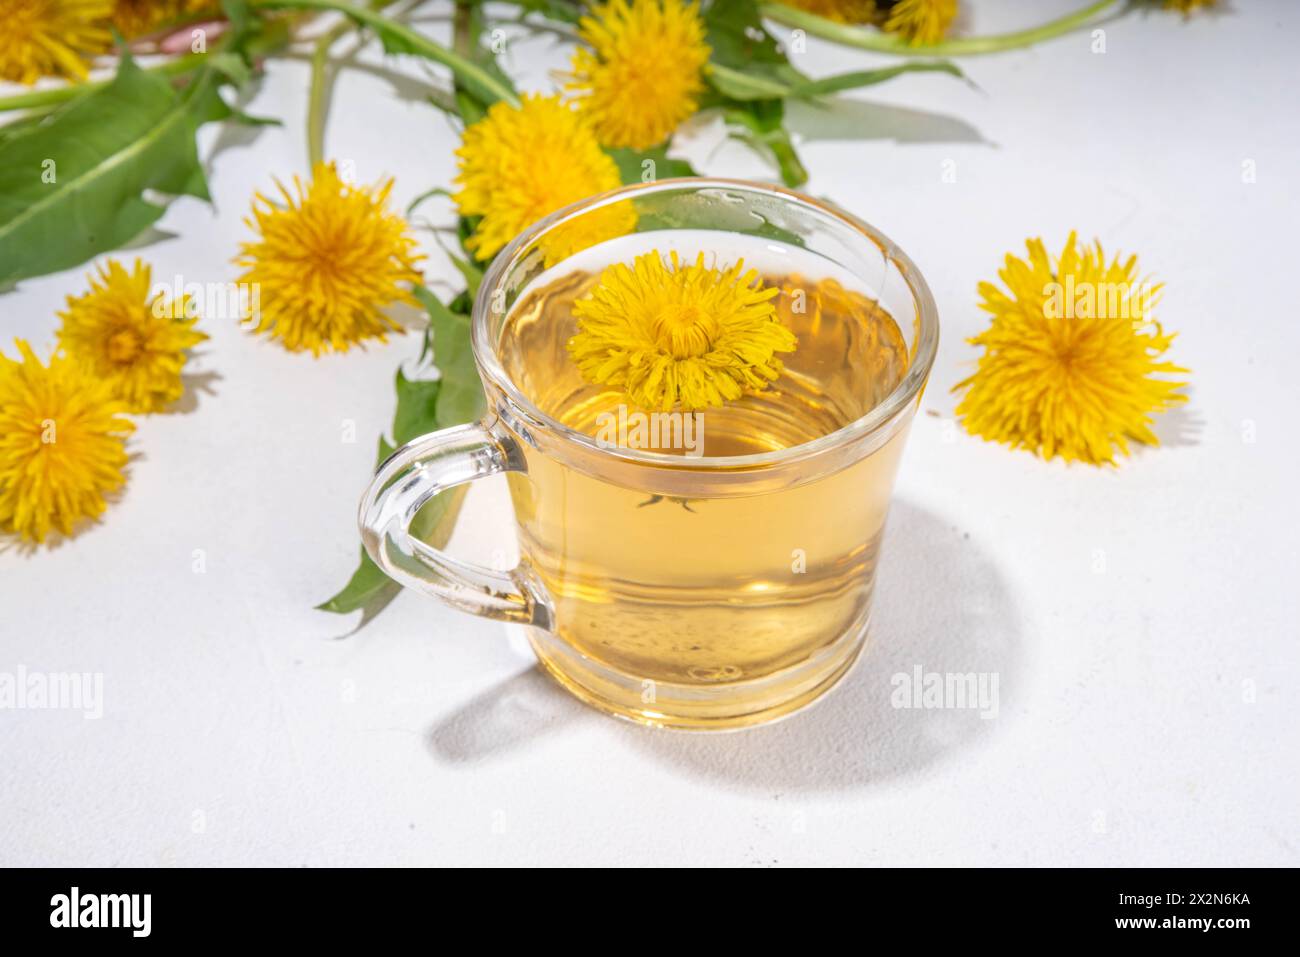 Pissenlits plante fleur thé. Tasse en verre transparent et théière avec boisson de thé chaud doré, sur fond blanc avec des fleurs de pissenlit et des feuilles Banque D'Images